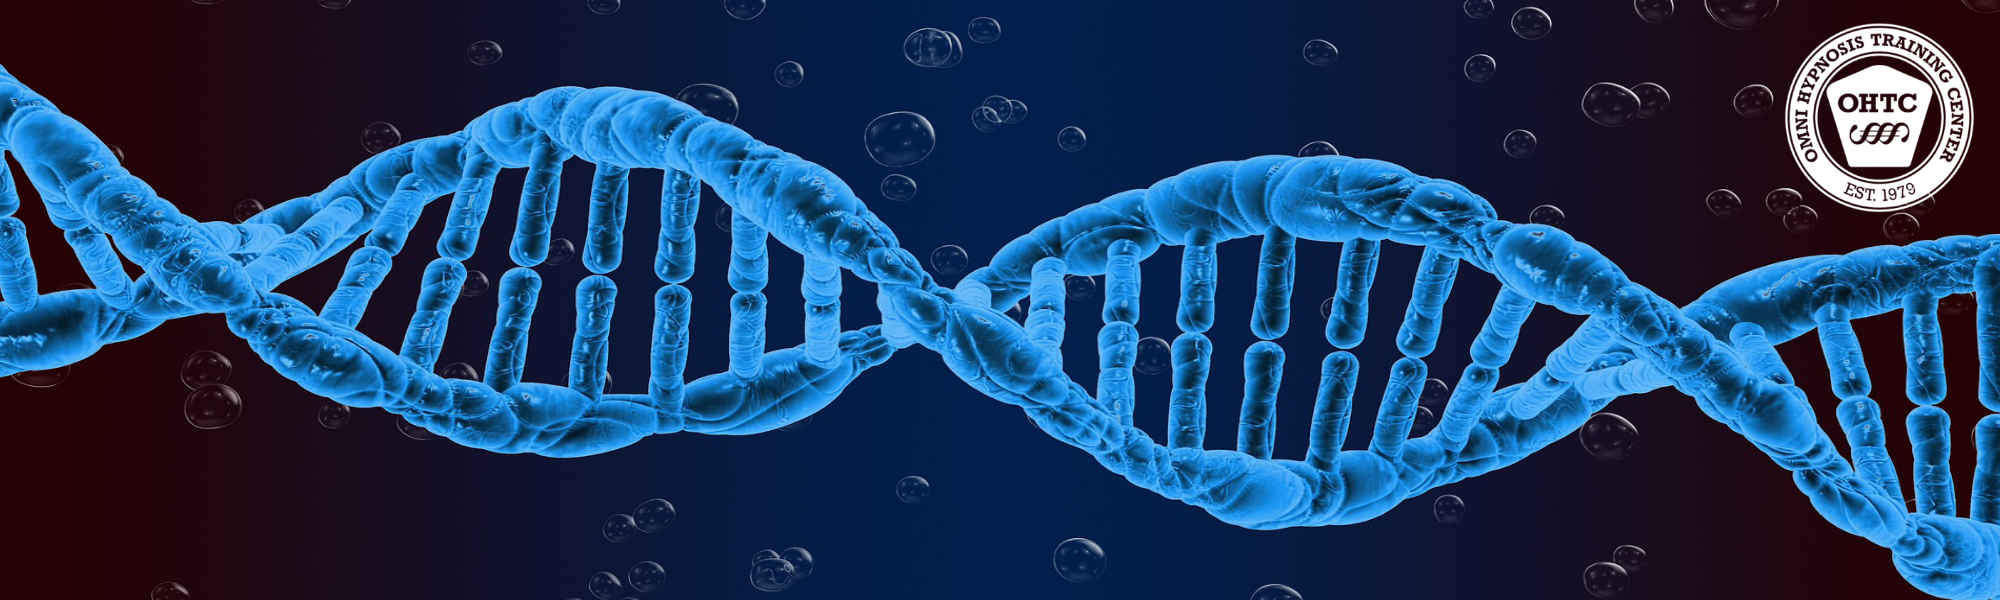 Omni Hypnosis - Unsere DNA ist dein Erfolg